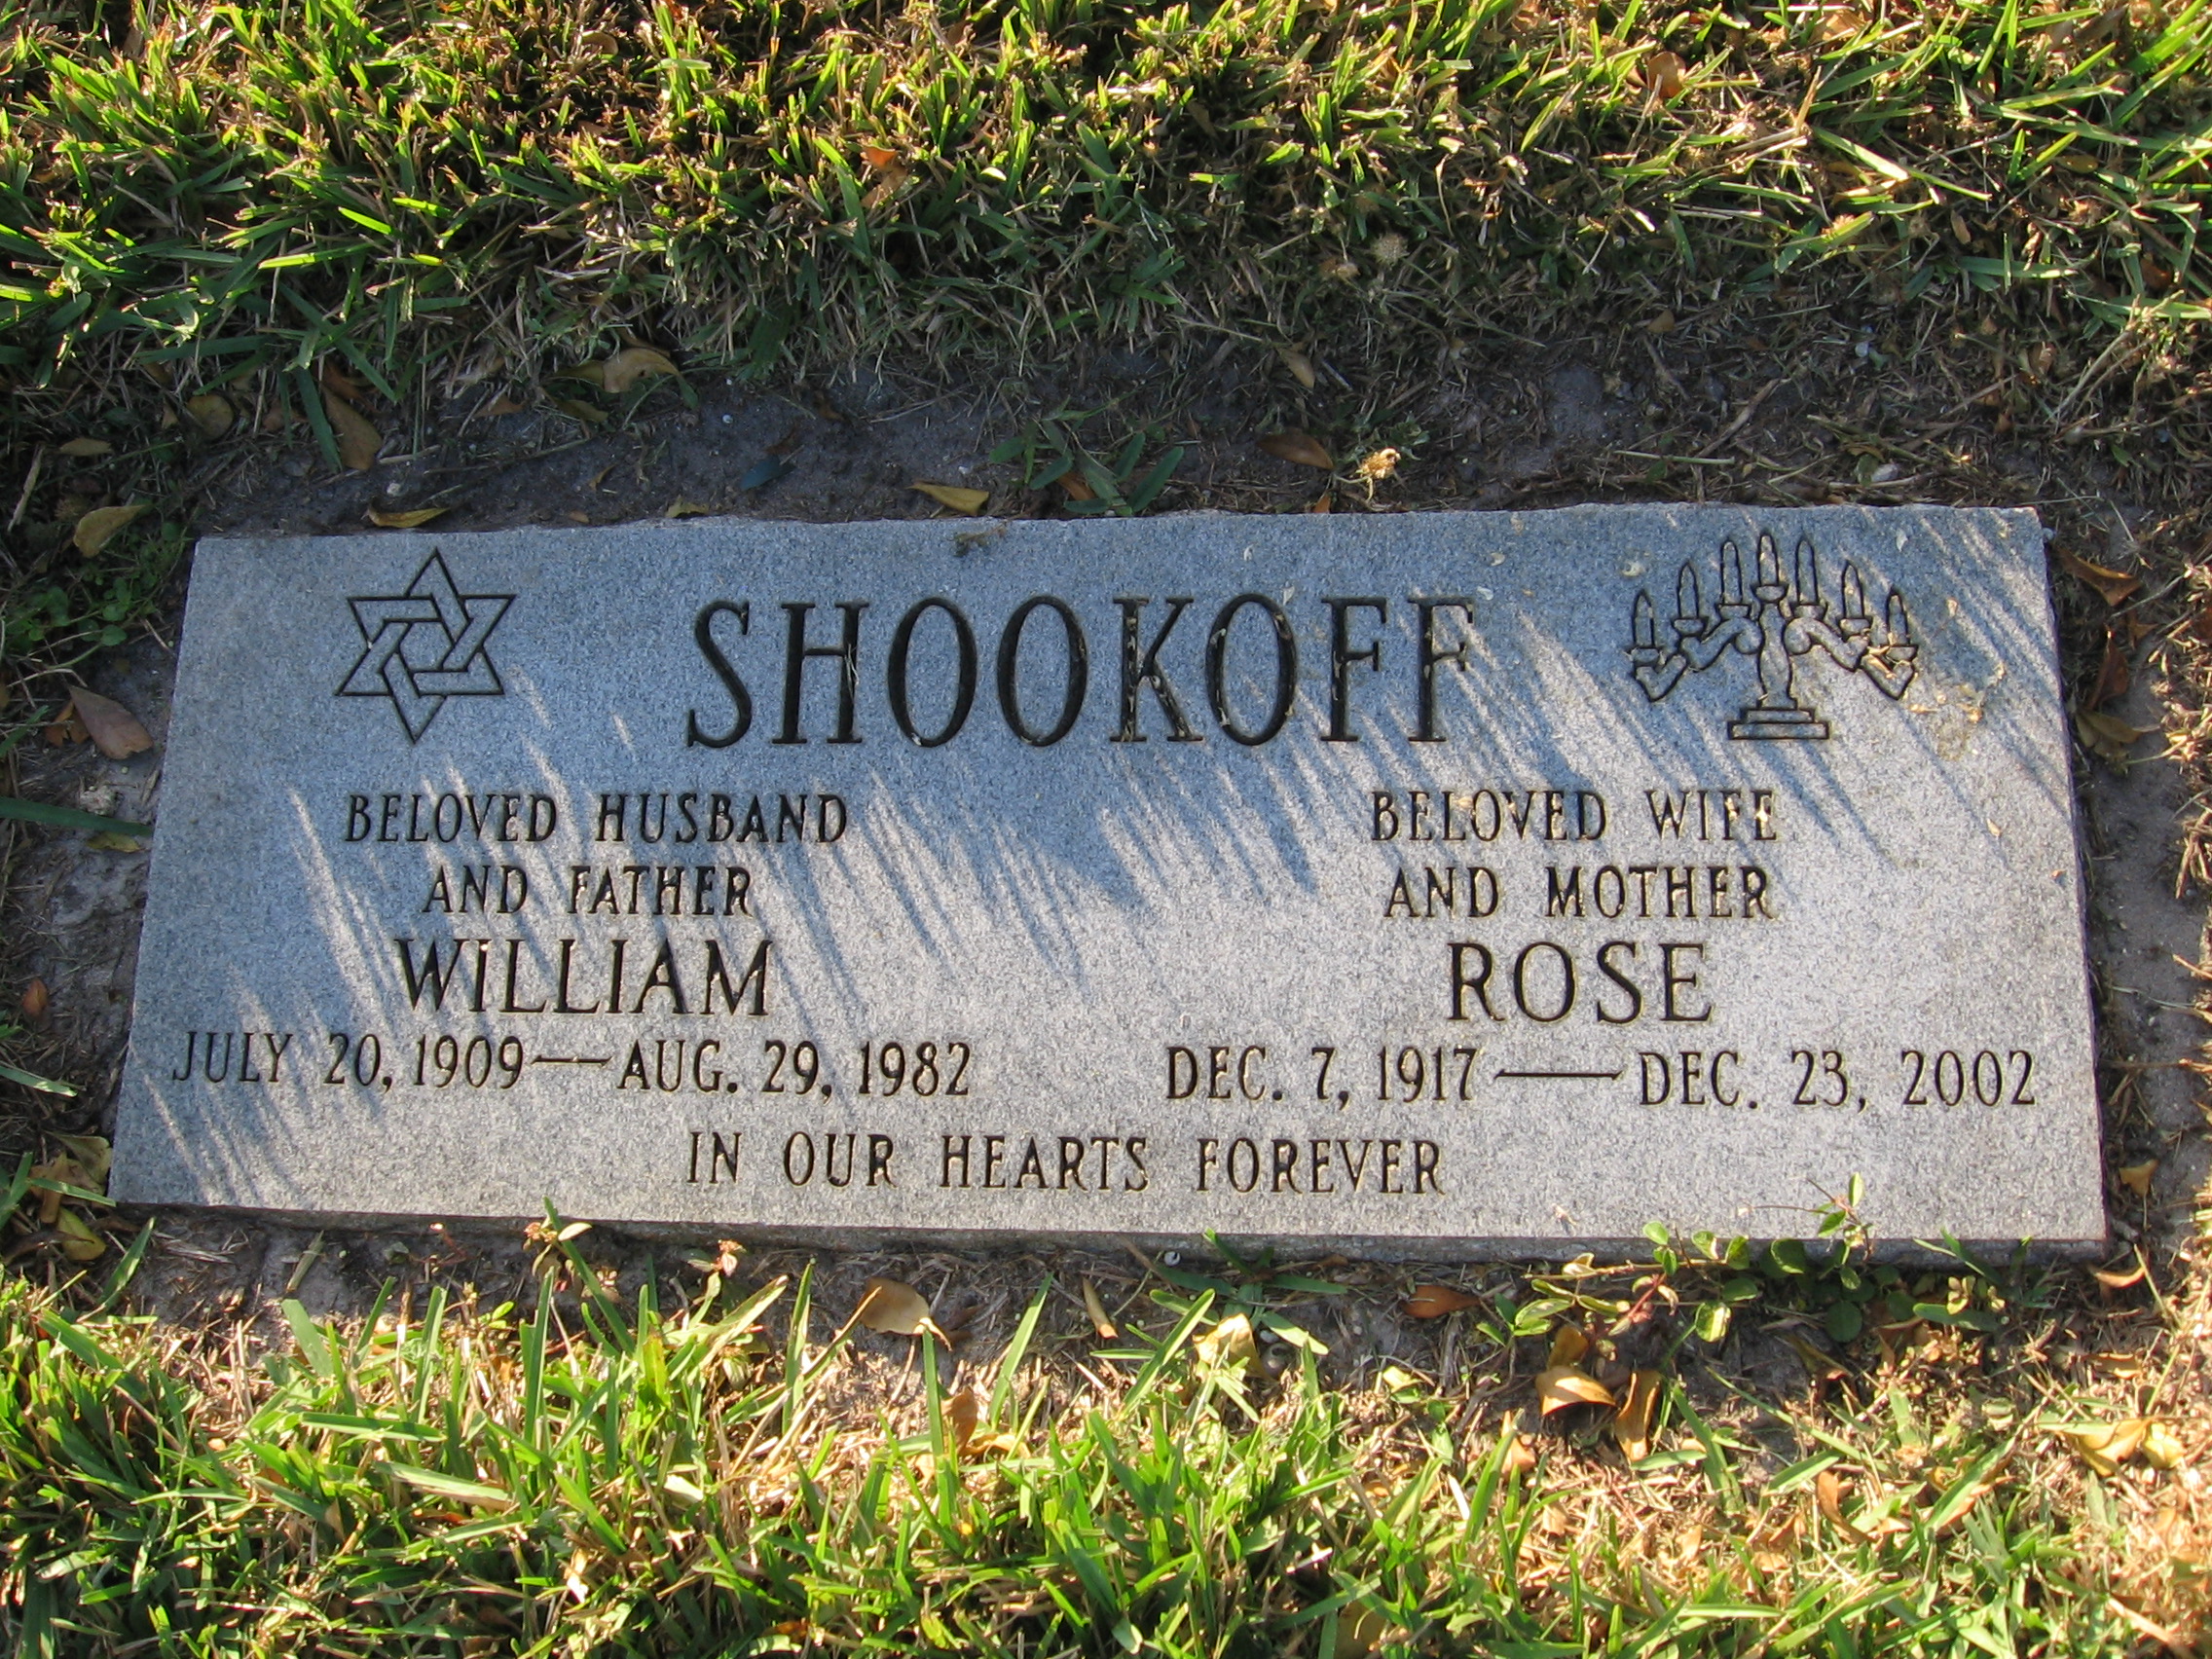 Rose Shookoff